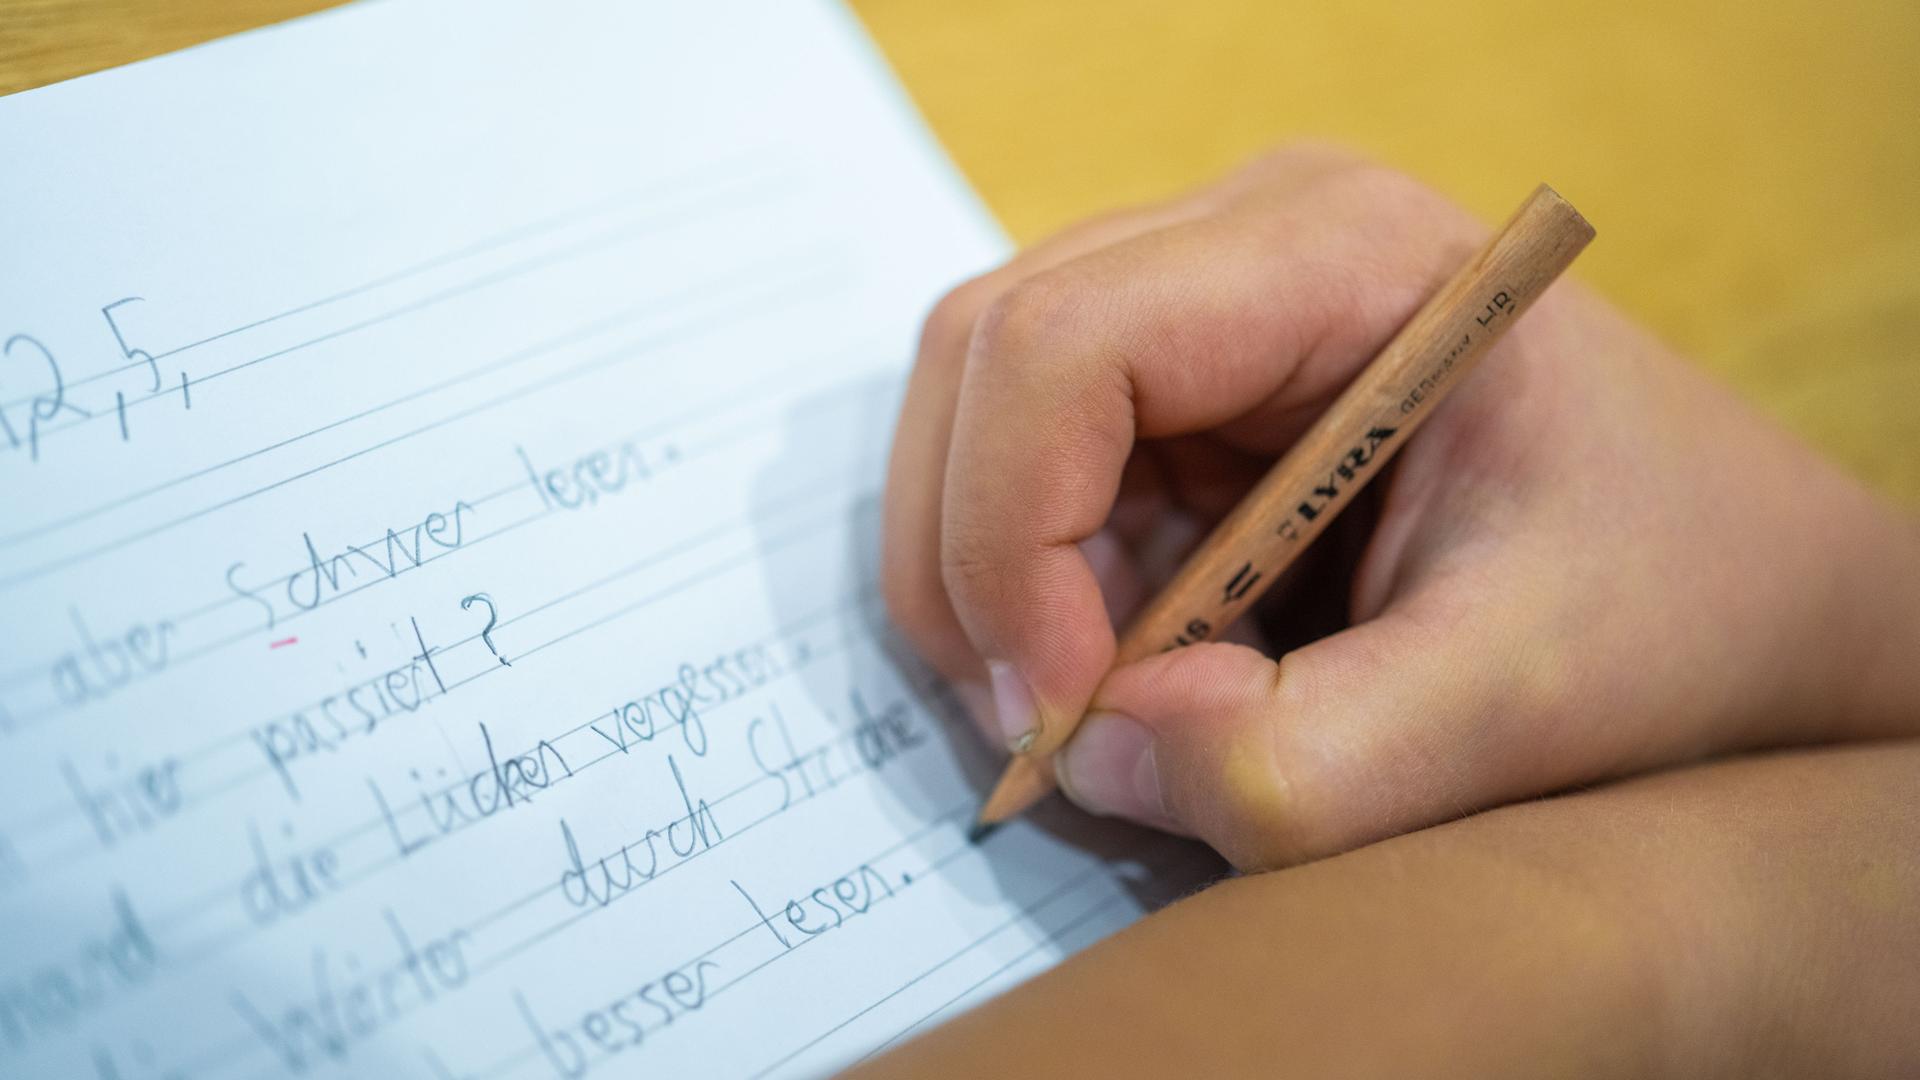 Grundschüler schreibt mit einem Bleistift auf ein Blatt.